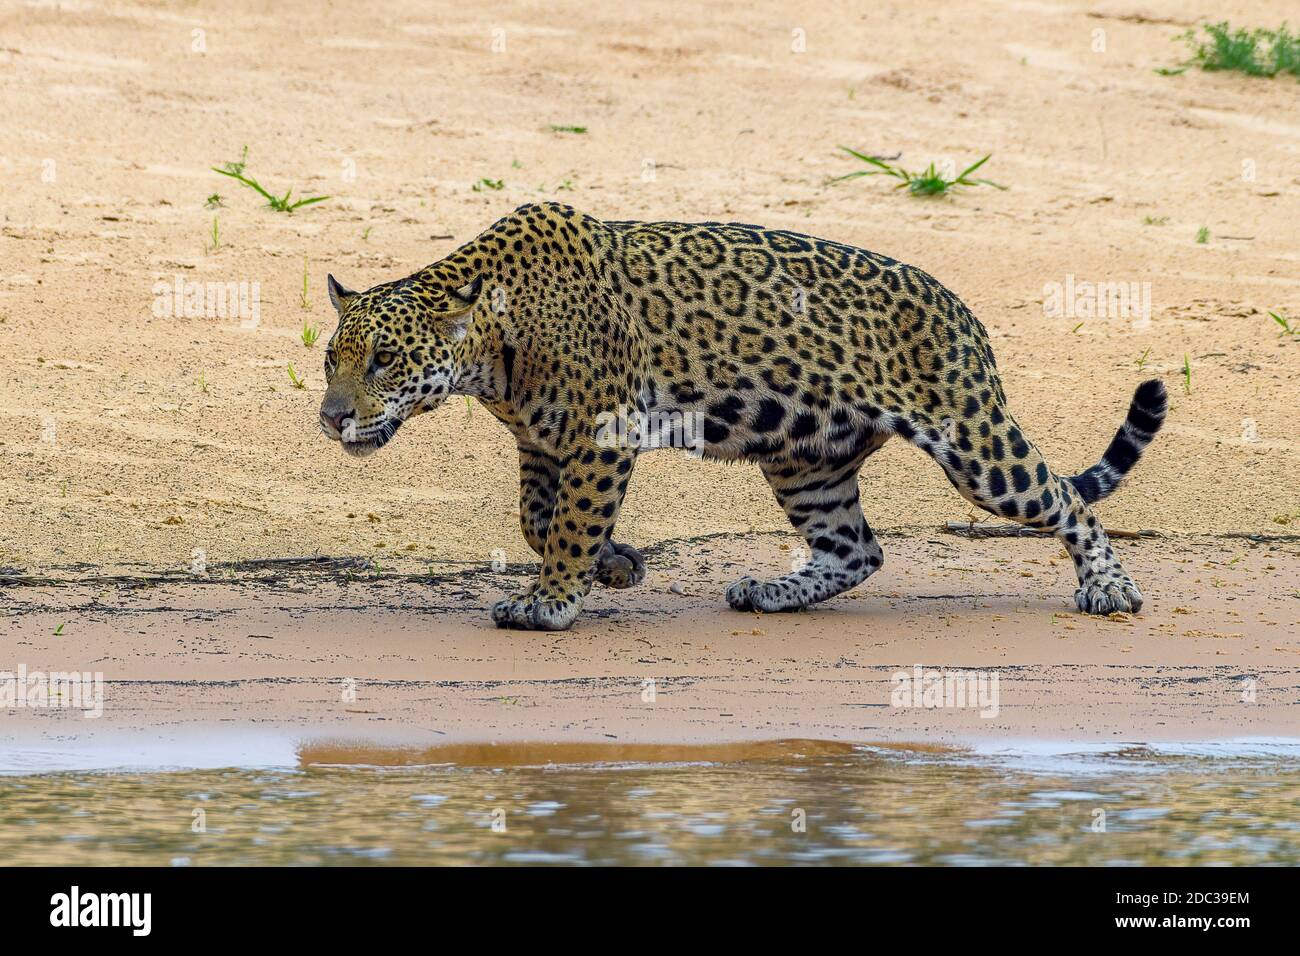 Jaguar (Panthera Onca), Matto Grosso do Sul, Pantanal, Brasilien Stock Photo